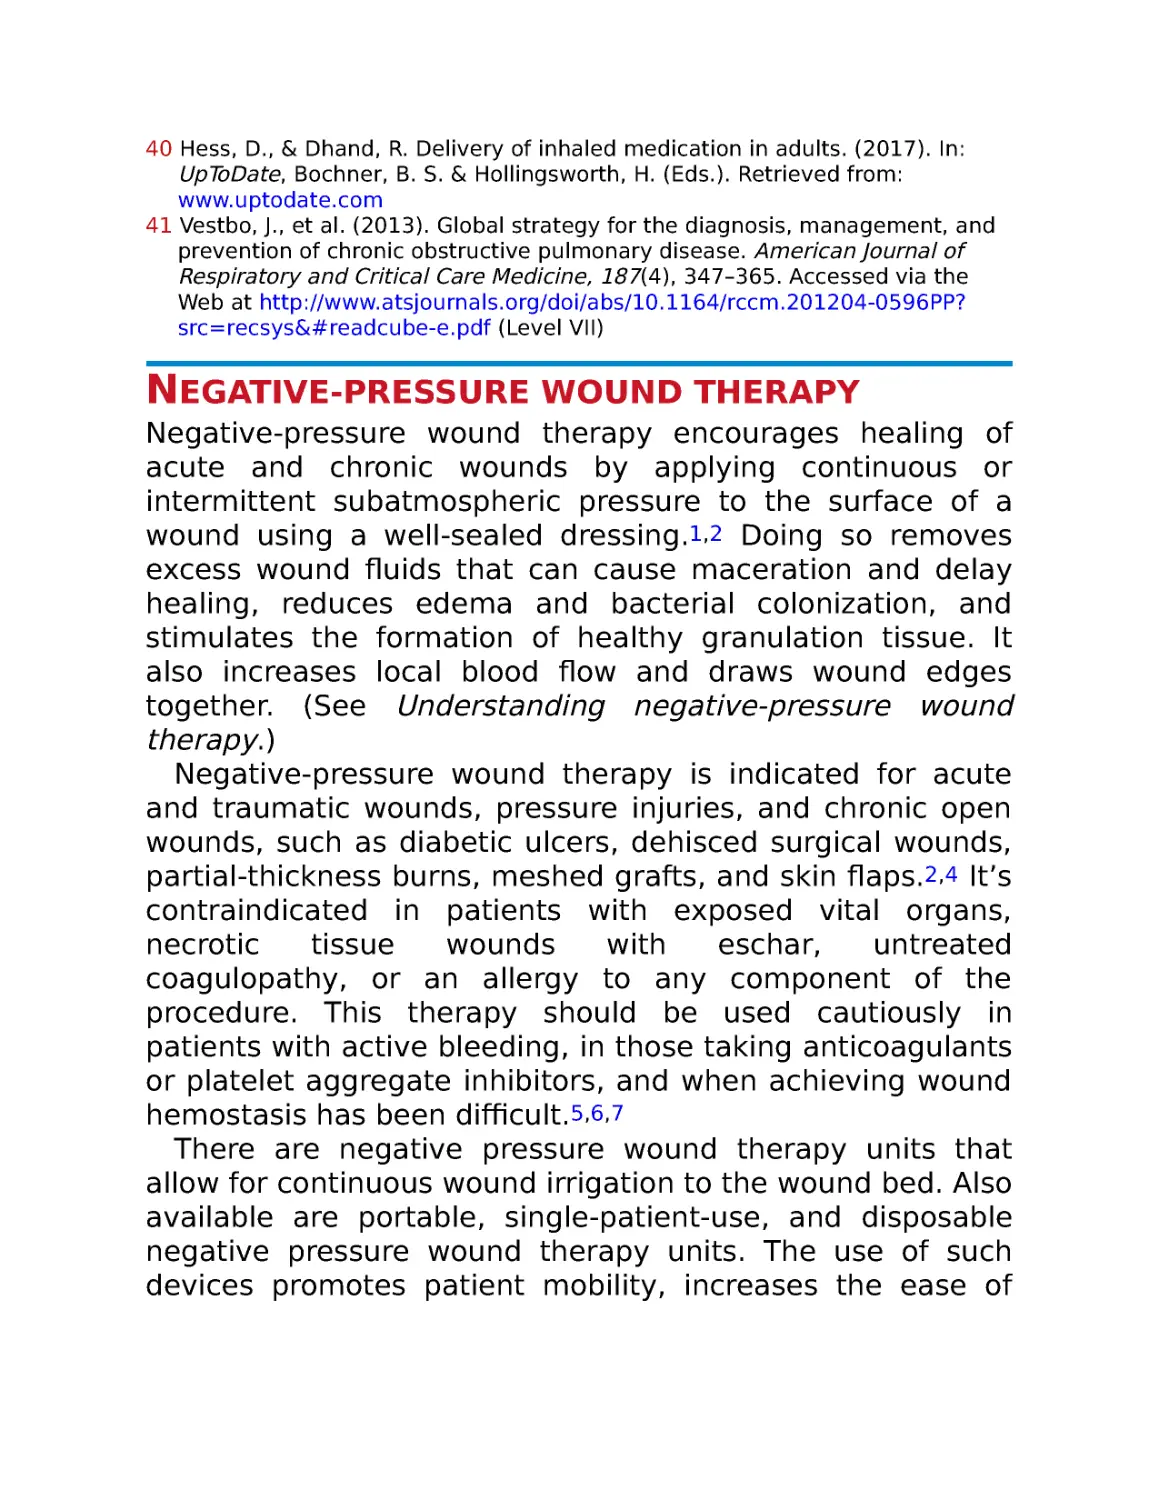 Negative-pressure wound therapy